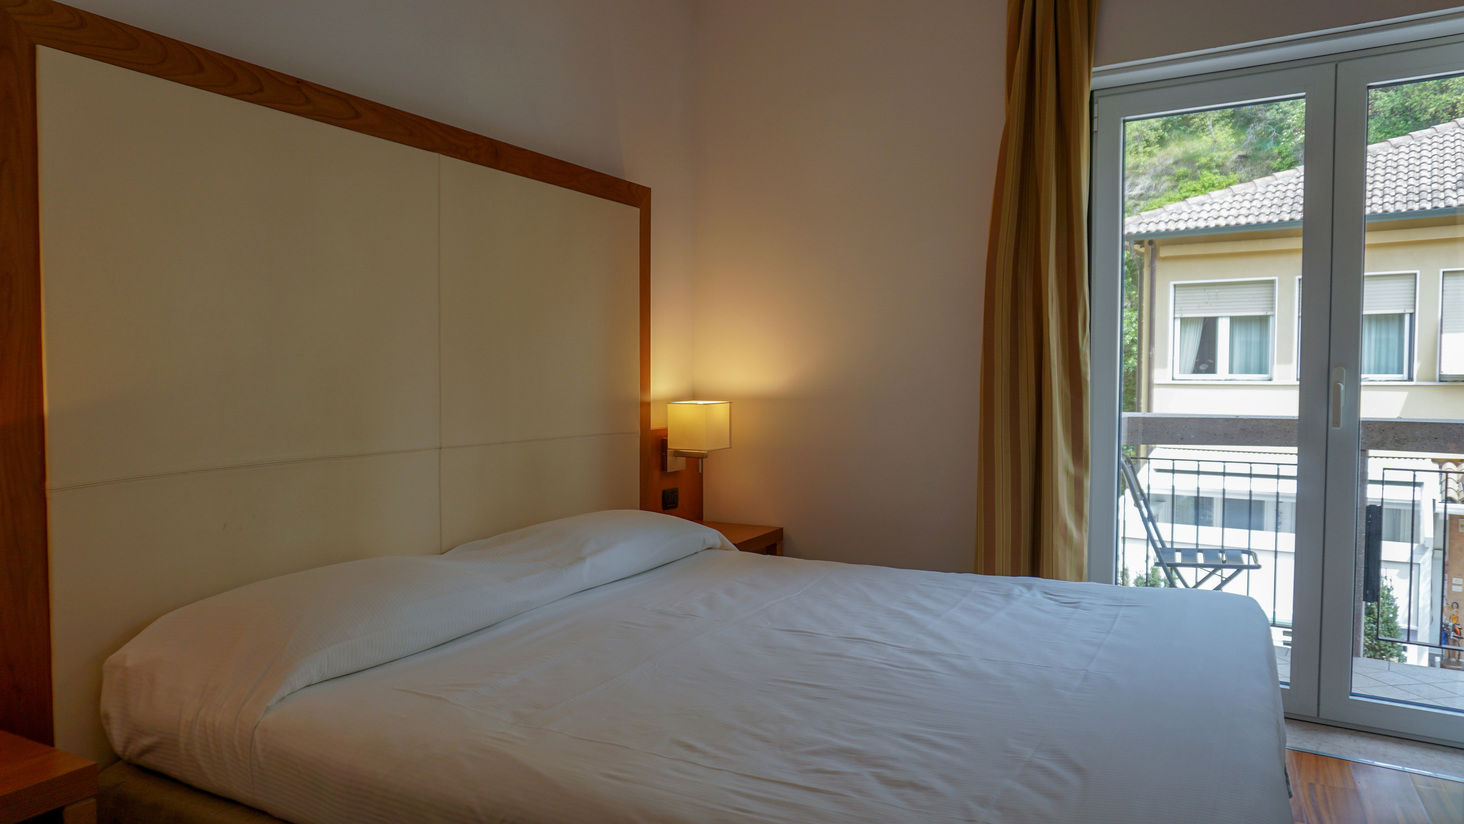 Hotel Mavino - Classic Room With Terrace 2